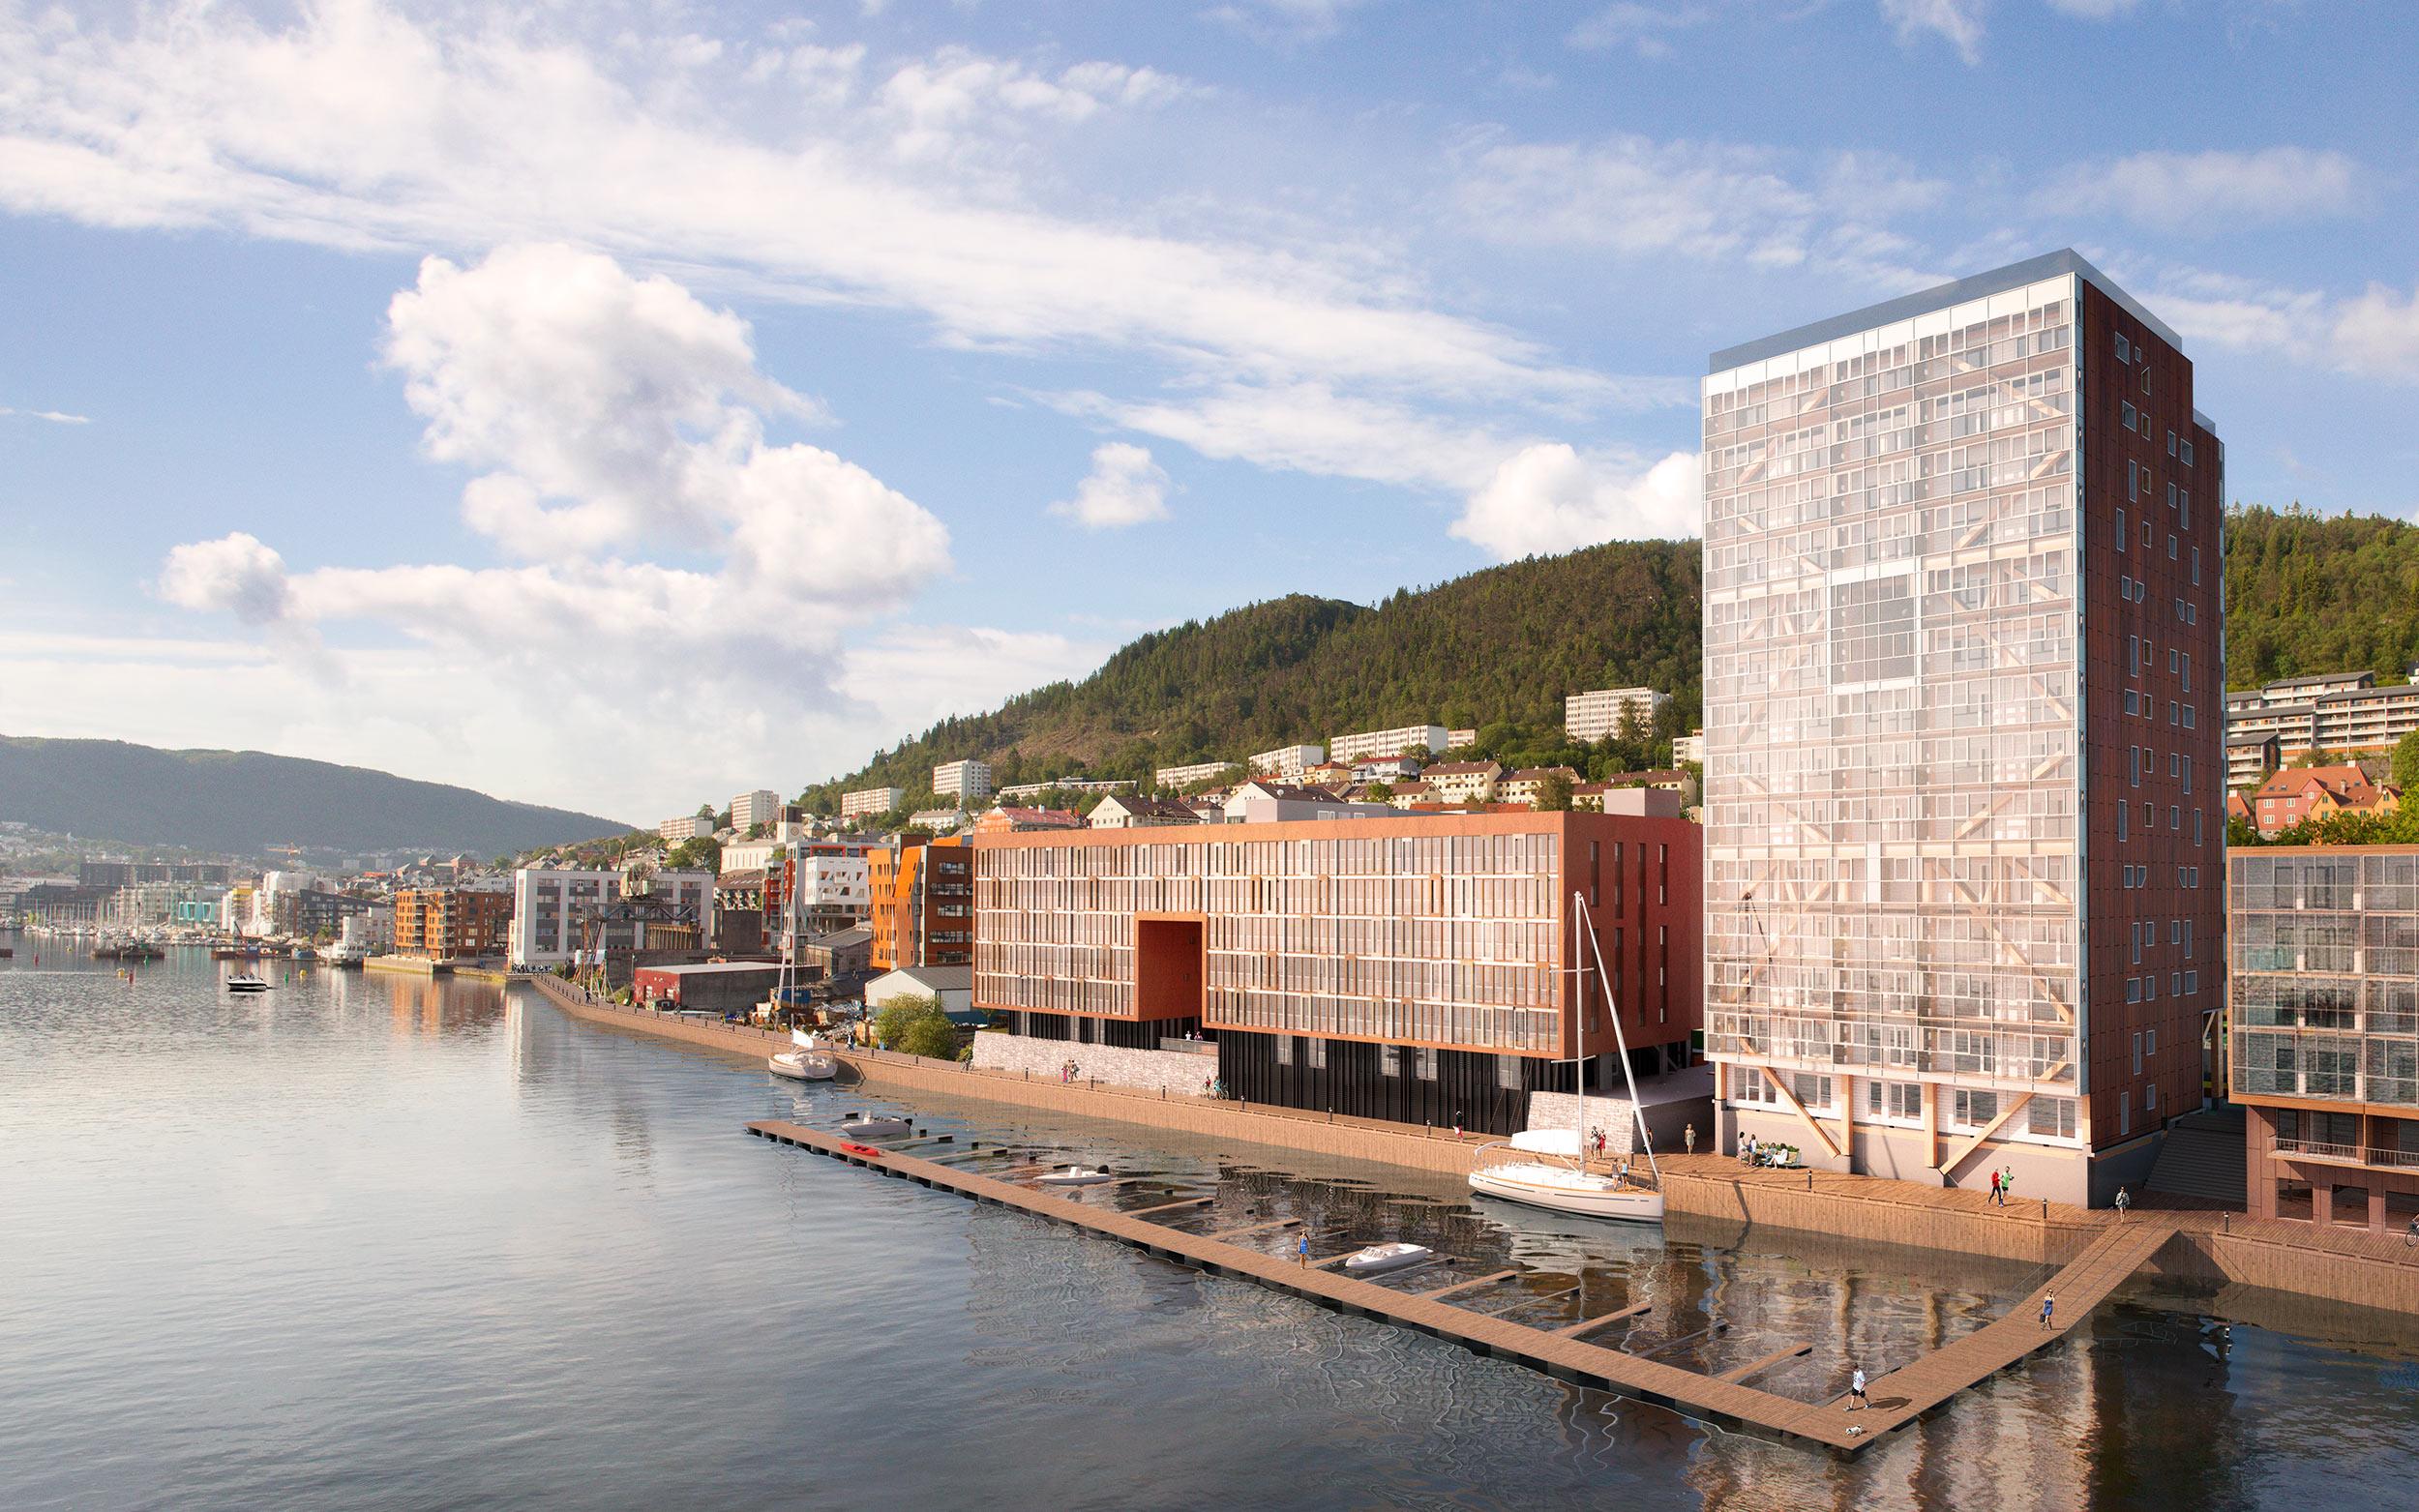 Bergen og omegn boligbyggerlag BOB «Treet» Utfordring: Bygge verdens høyeste trehus Løsning: Limtrekonstruksjon med moduler og betongsjikt på 14 etasjer Urbaniseringstrend og